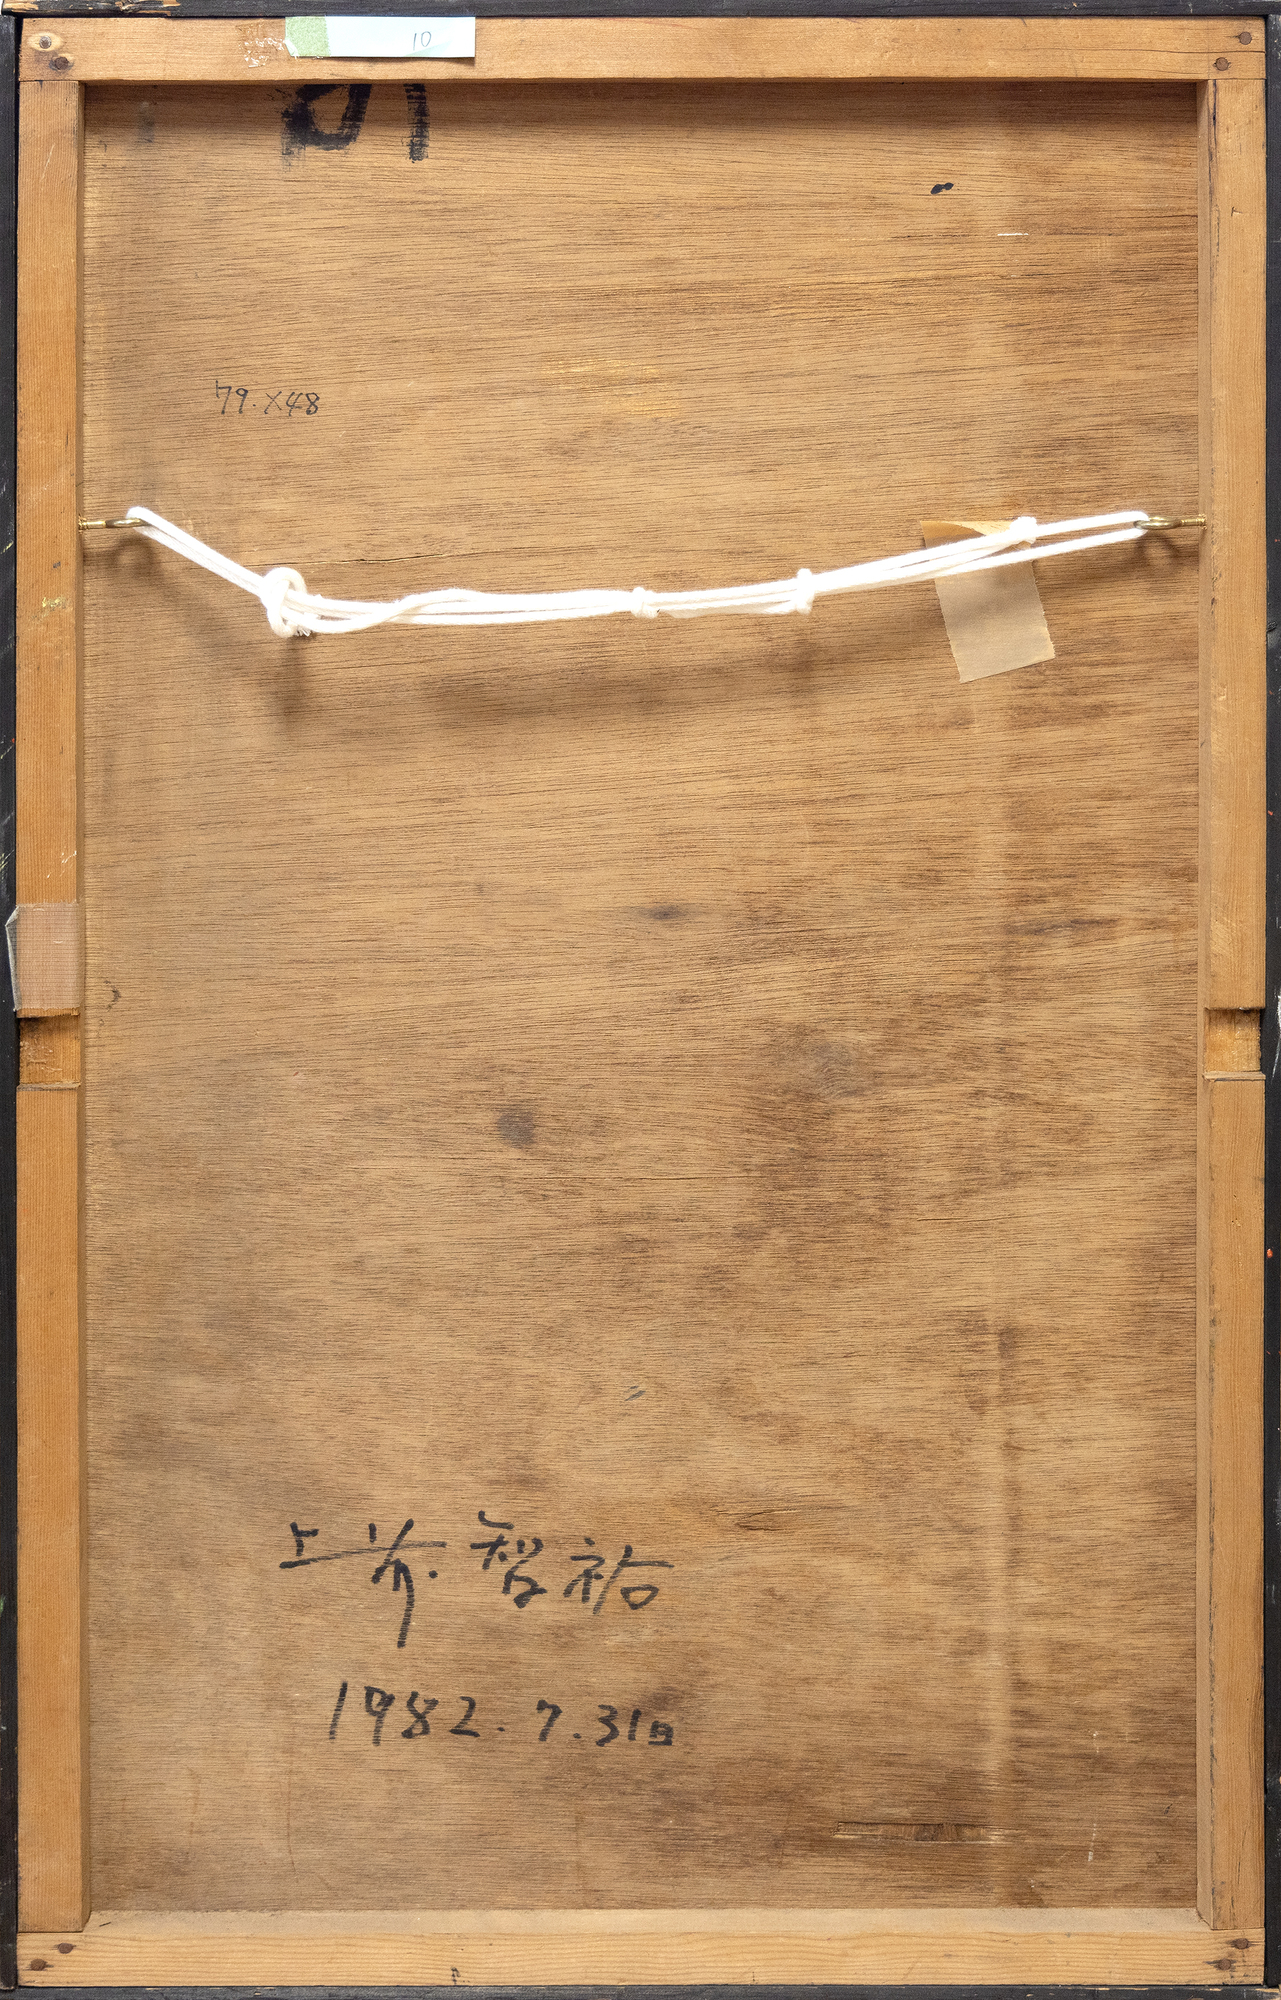 Aunque no se le considera un pintor de acción, Chiyu Uemae es conocido por varios enfoques centrados en la forma, la textura y la interacción de los colores. Como en este ejemplo, Sin título, suele aplicar el pigmento con espátula, creando capas texturizadas que permiten que los trozos de color brillen como joyas enterradas bajo tierra. Antes de unirse al Grupo Gutai, Uemae estudió Nan Ga, la escuela meridional de pintura china, y atribuye a su experiencia de inmersión en el estilo de teñido de Kioto y a su disciplina de costura la influencia de su estilo maduro. La obra de Uemae explora la materialidad de la pintura y las posibilidades del lienzo, reflejando un profundo compromiso con el propio acto de pintar.